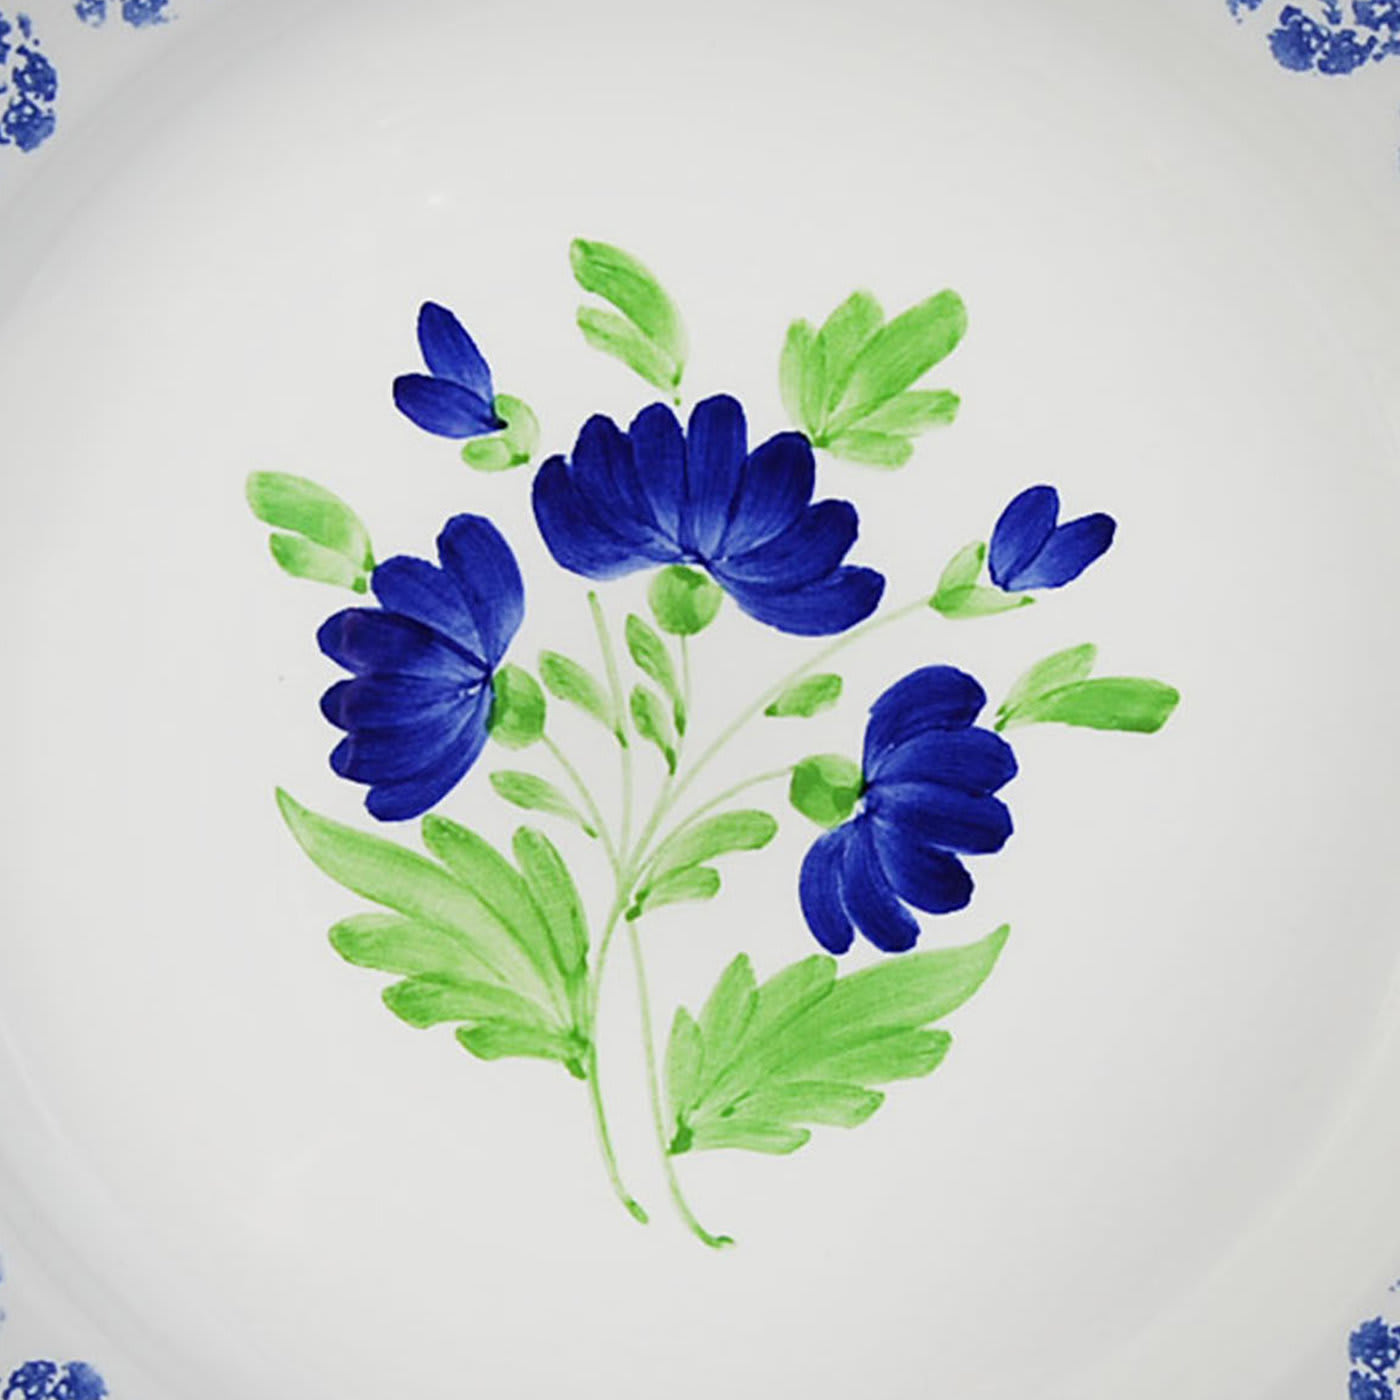 Set of 4 Rustic Flower Ceramic Plates - Este Ceramiche